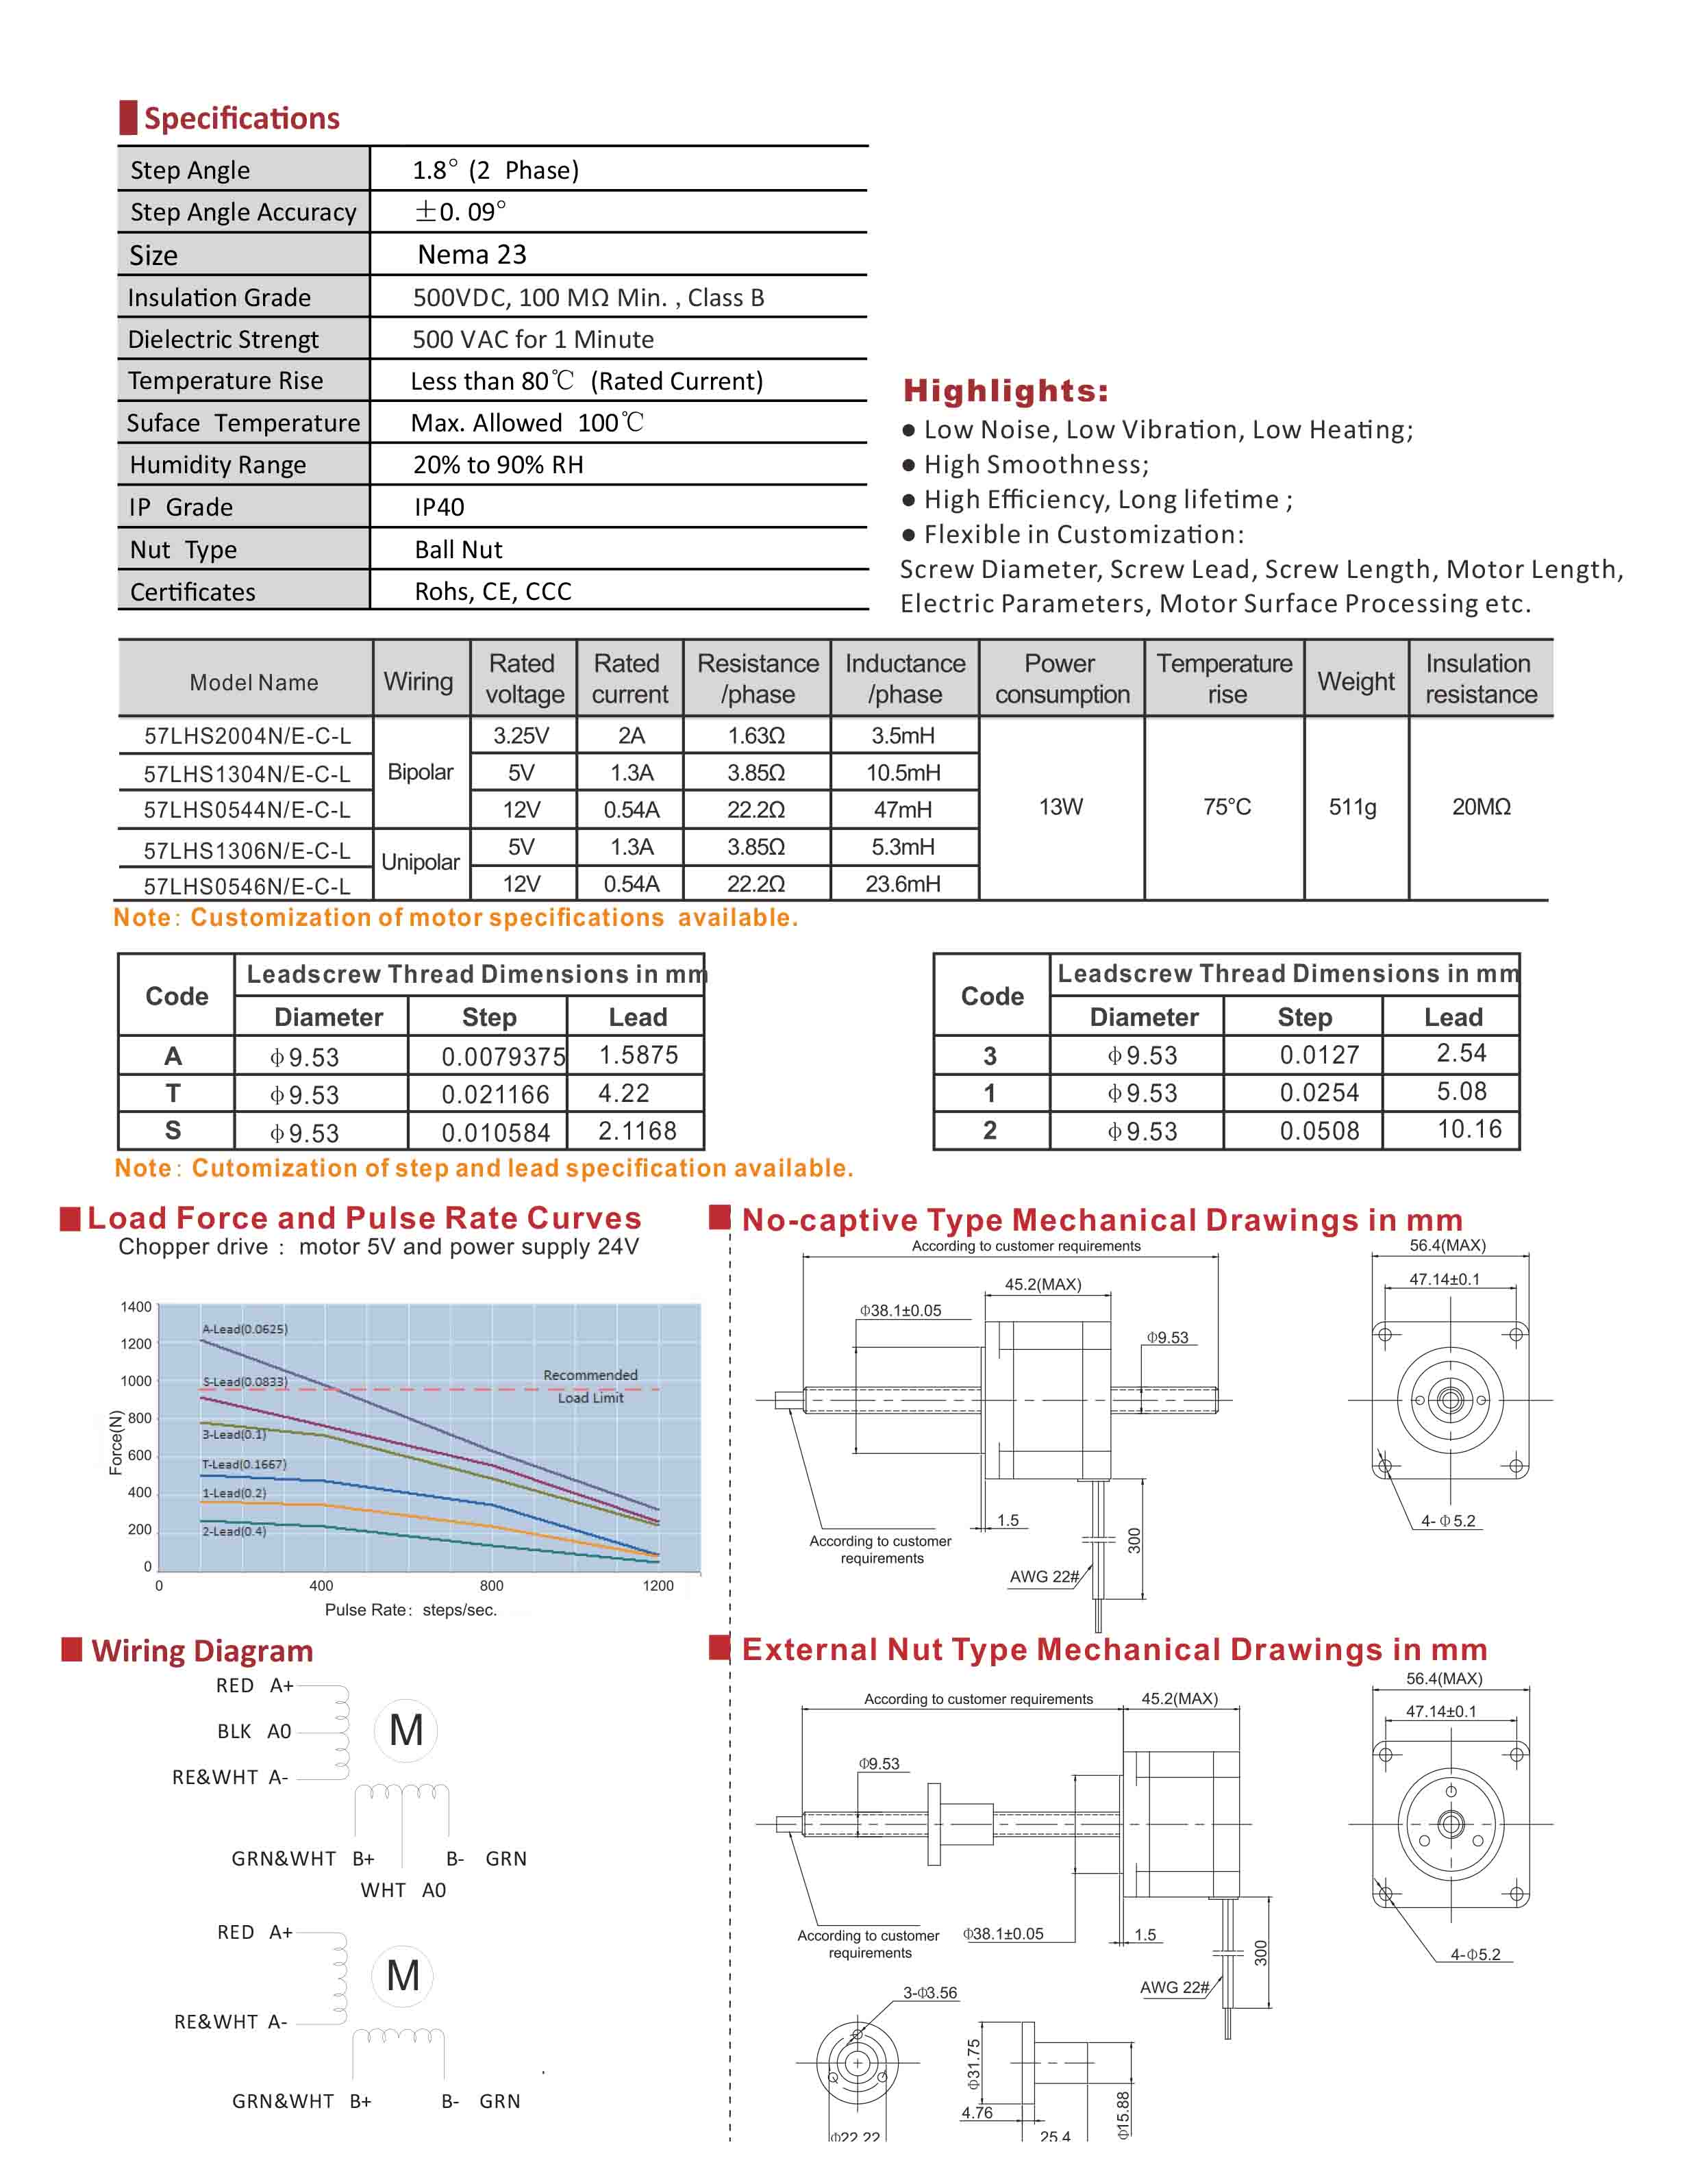 57LHS2004 1304 0544 1306 0546 Series Hybrid Linear Stepper Motors Data Sheet.jpg